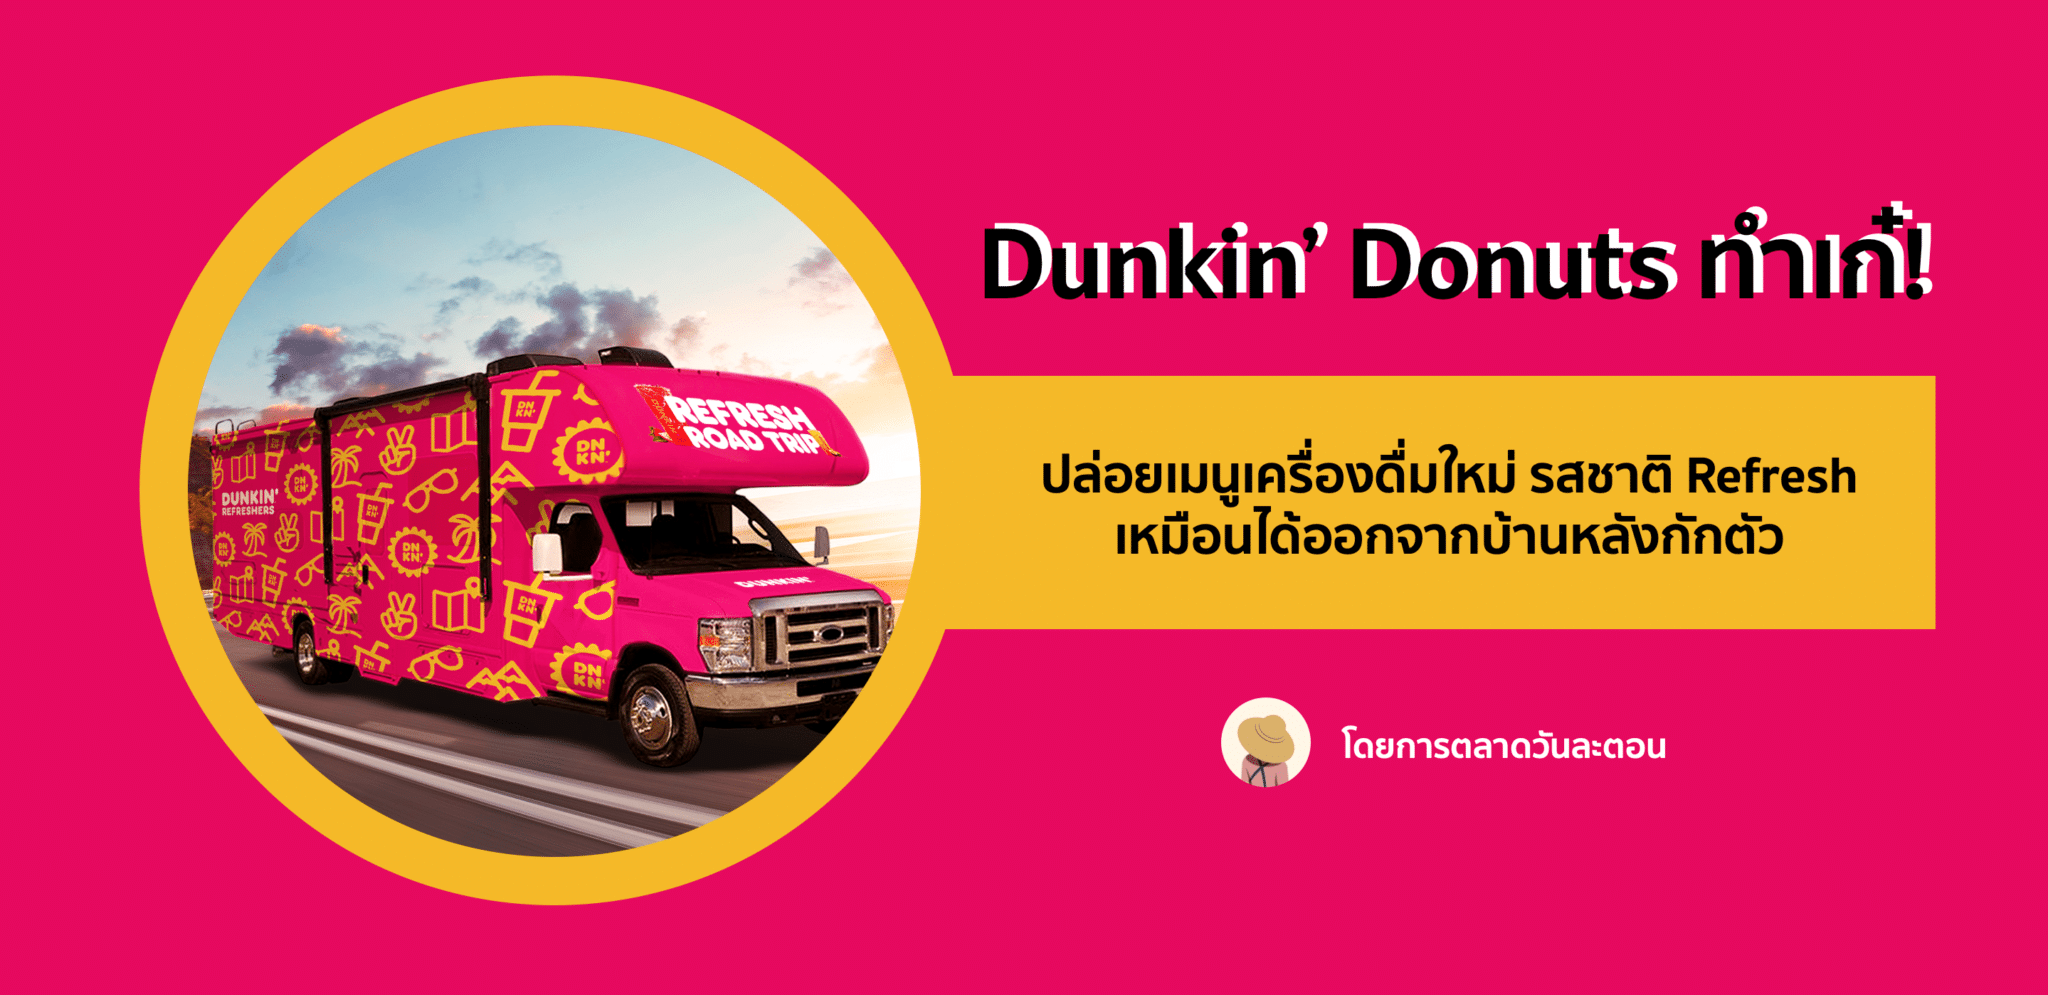 Dunkin’ Donuts  สื่อความ Refresh ของเมนูใหม่ด้วยรถ RV